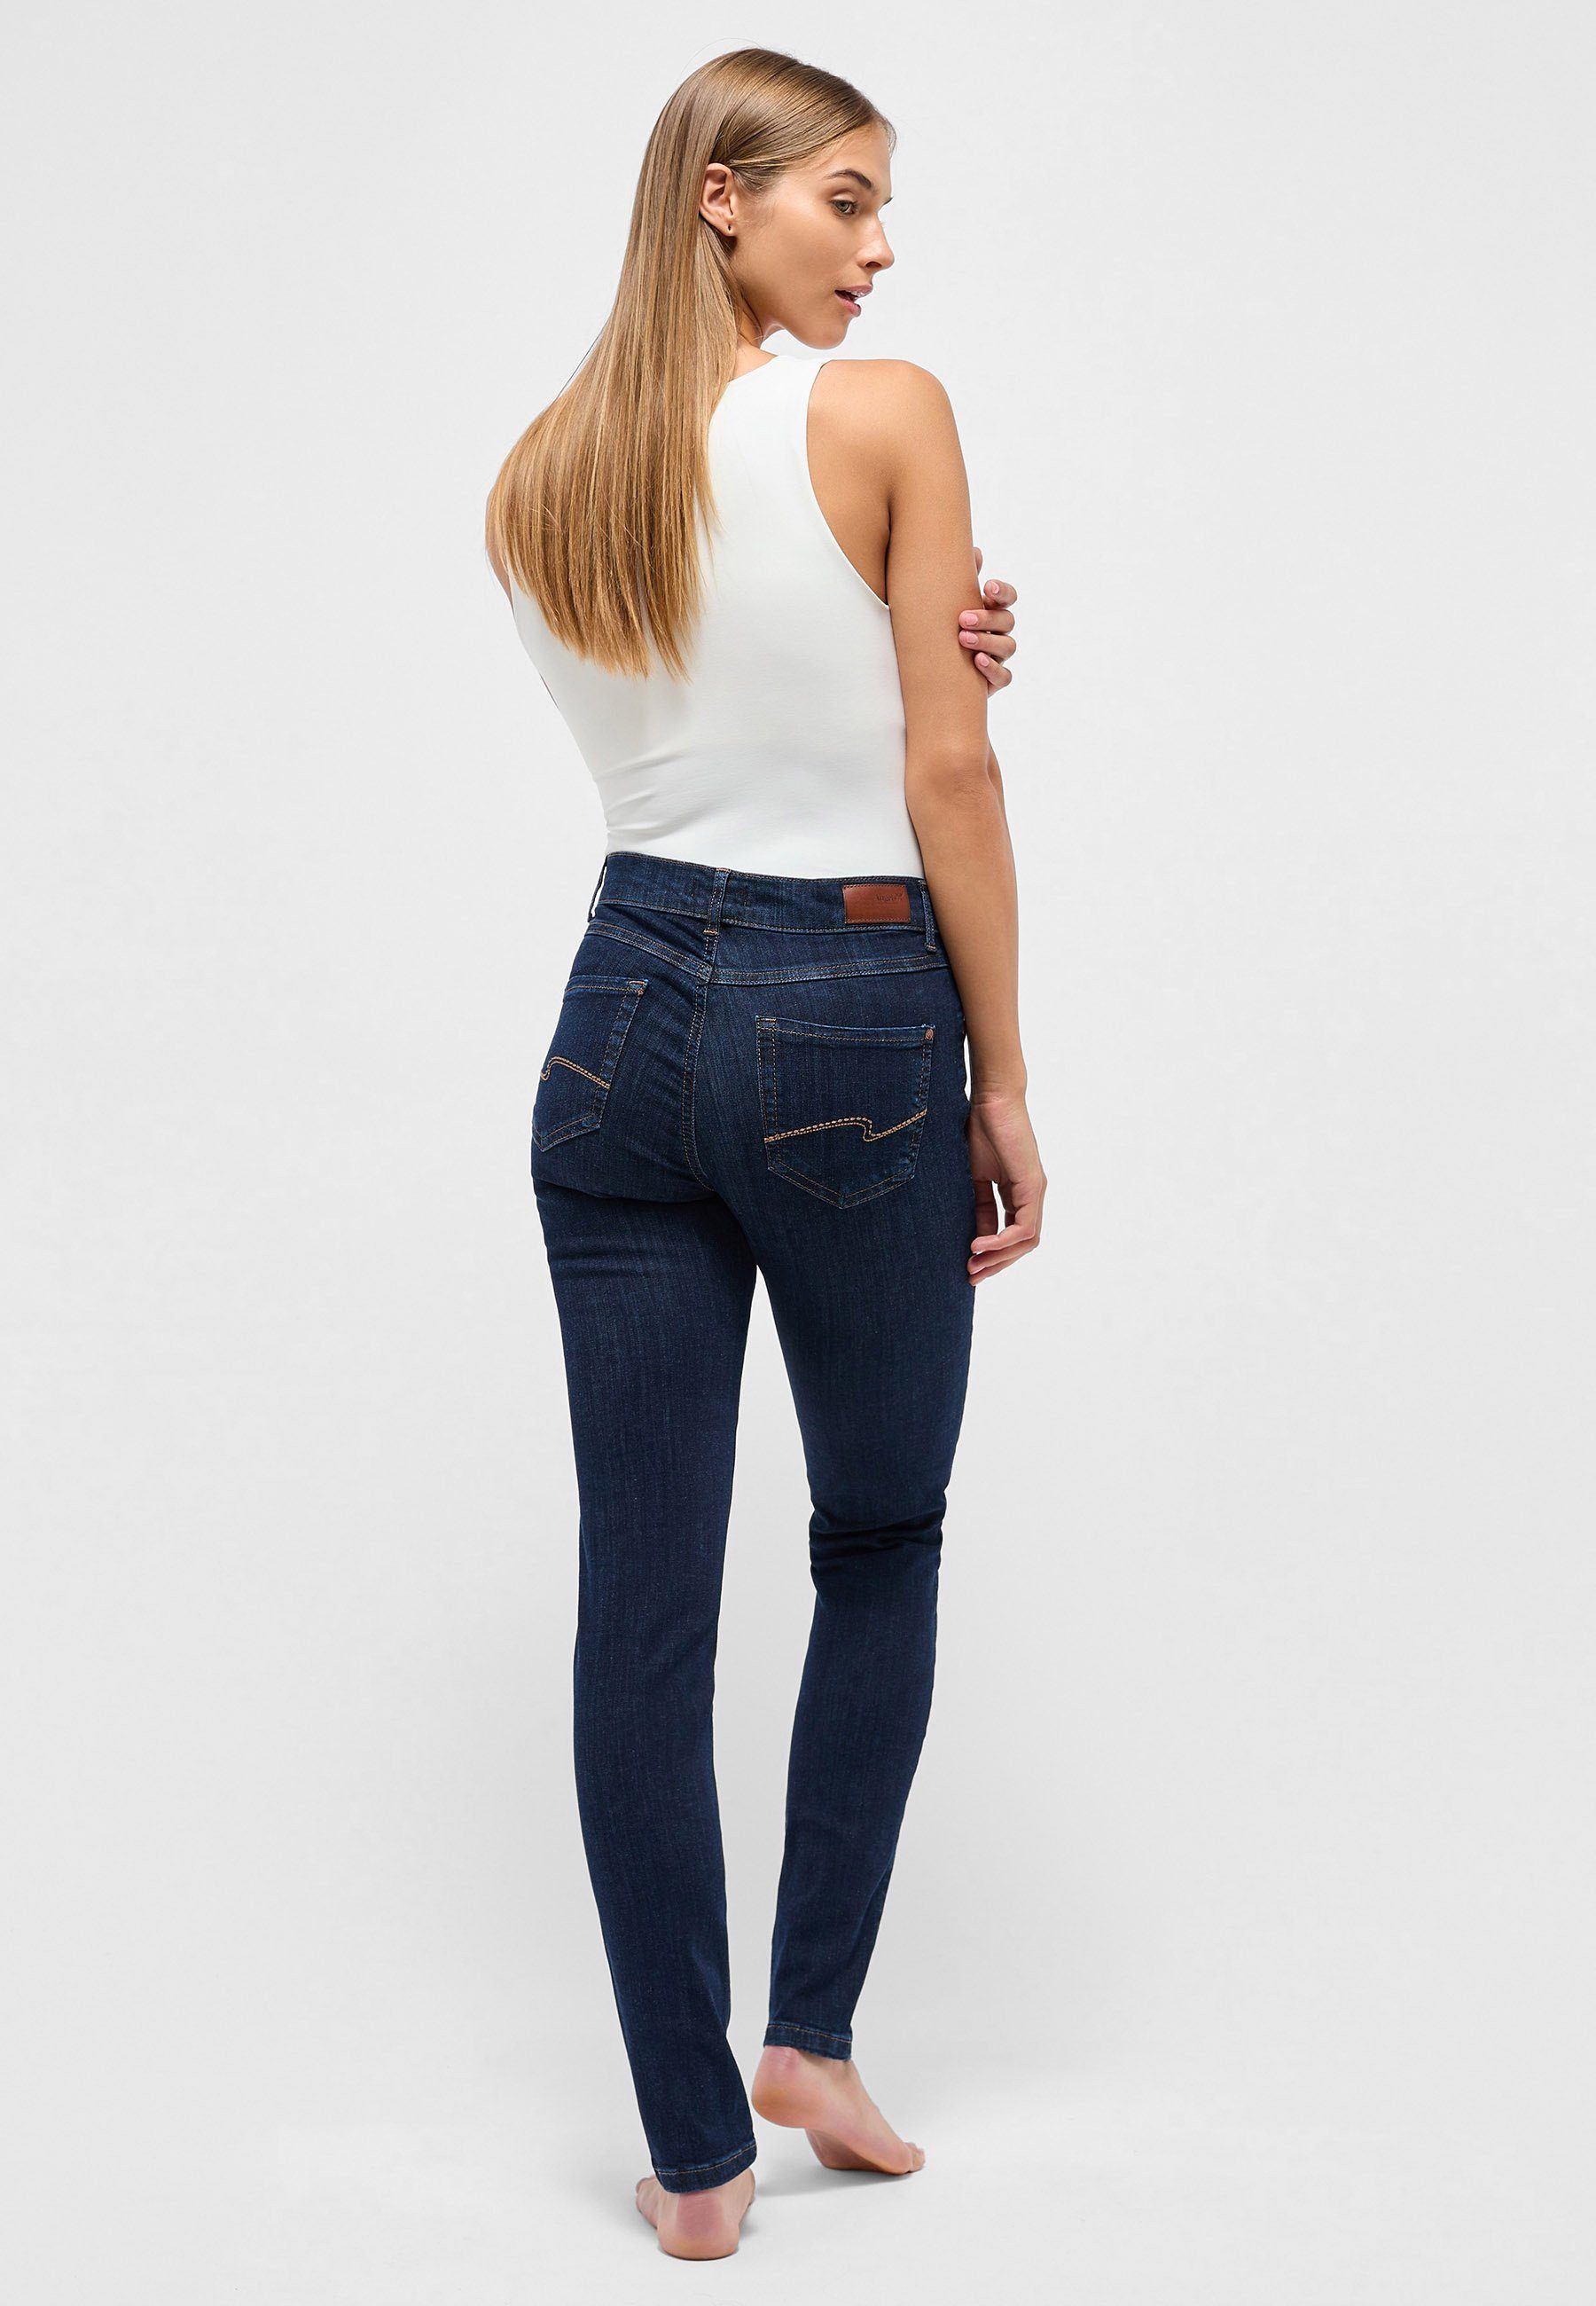 Reinhold Fleckenstein ANGELS Slim-fit-Jeans mit Label-Applikationen Stretch Denim Jeans Skinny mit Power